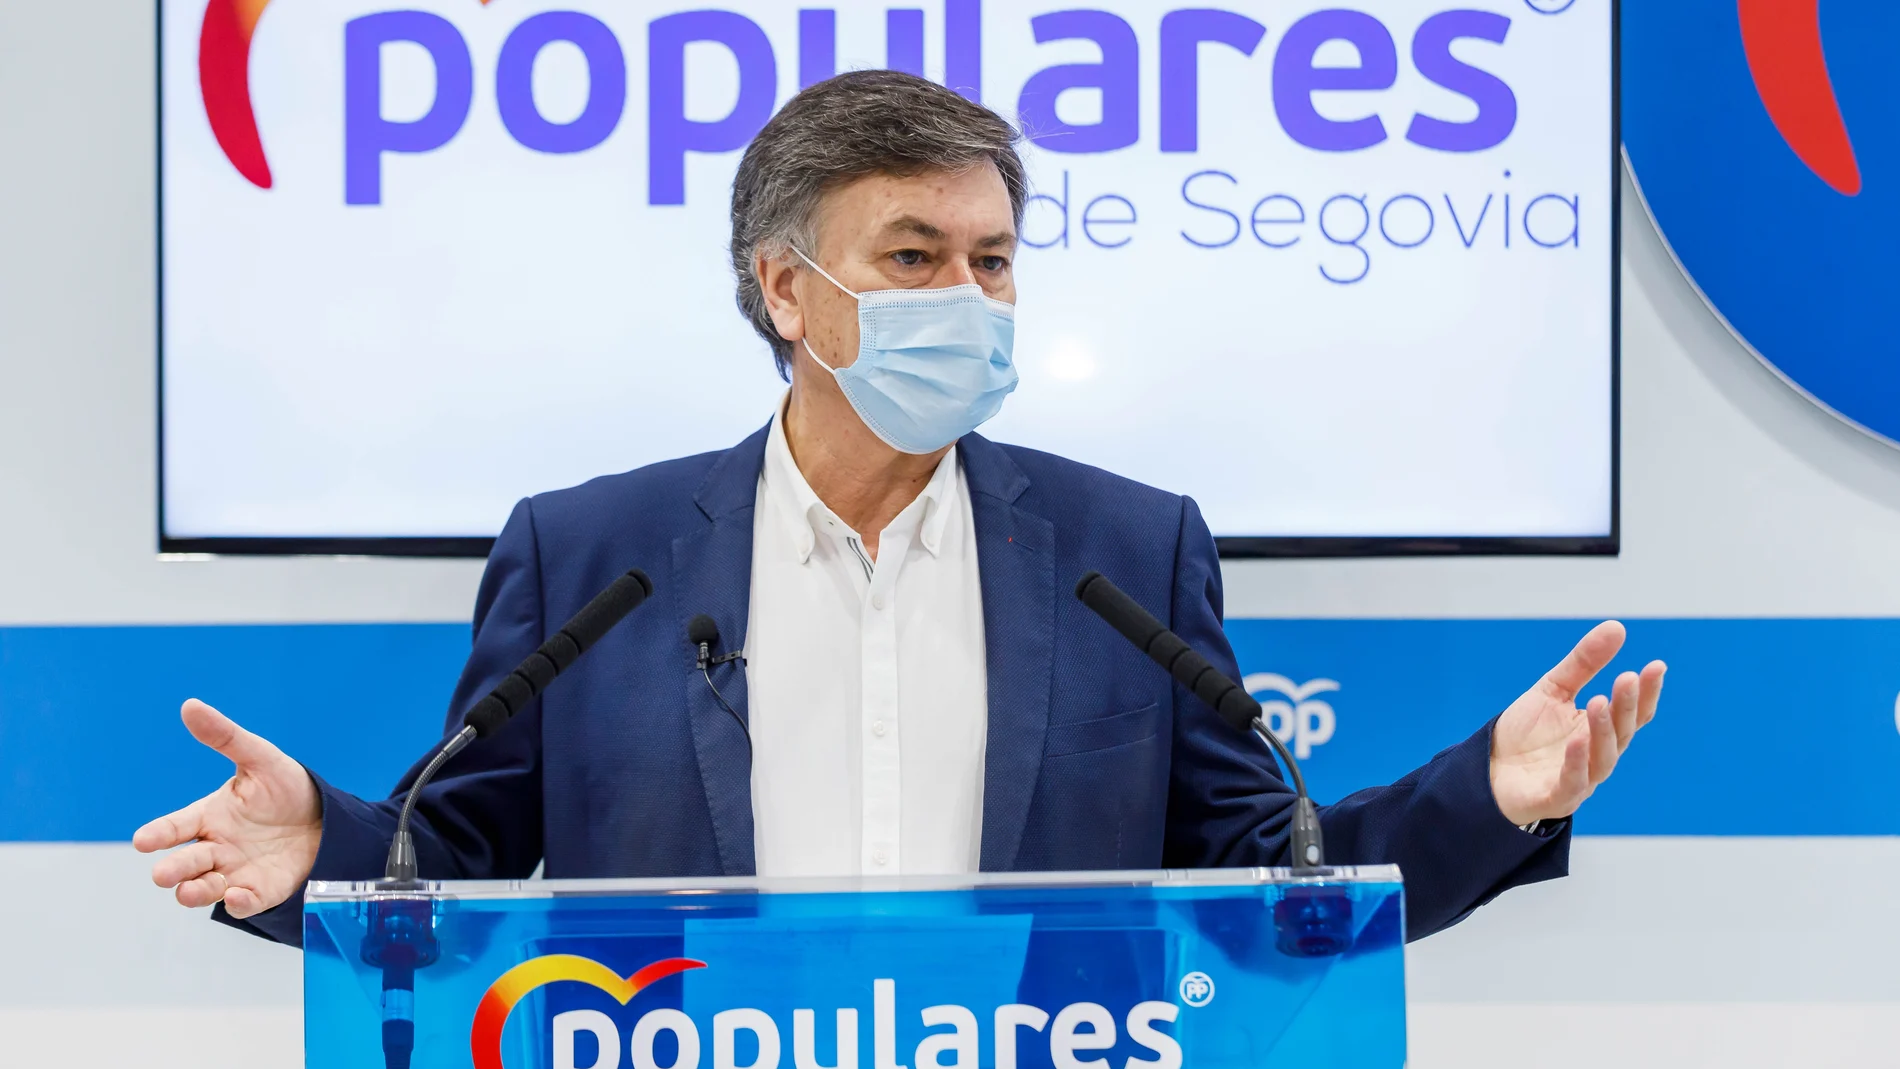 El secretario autonómico del Partido Popular de Castilla y León, Francisco Vázquez, analiza varios asuntos de actualidad